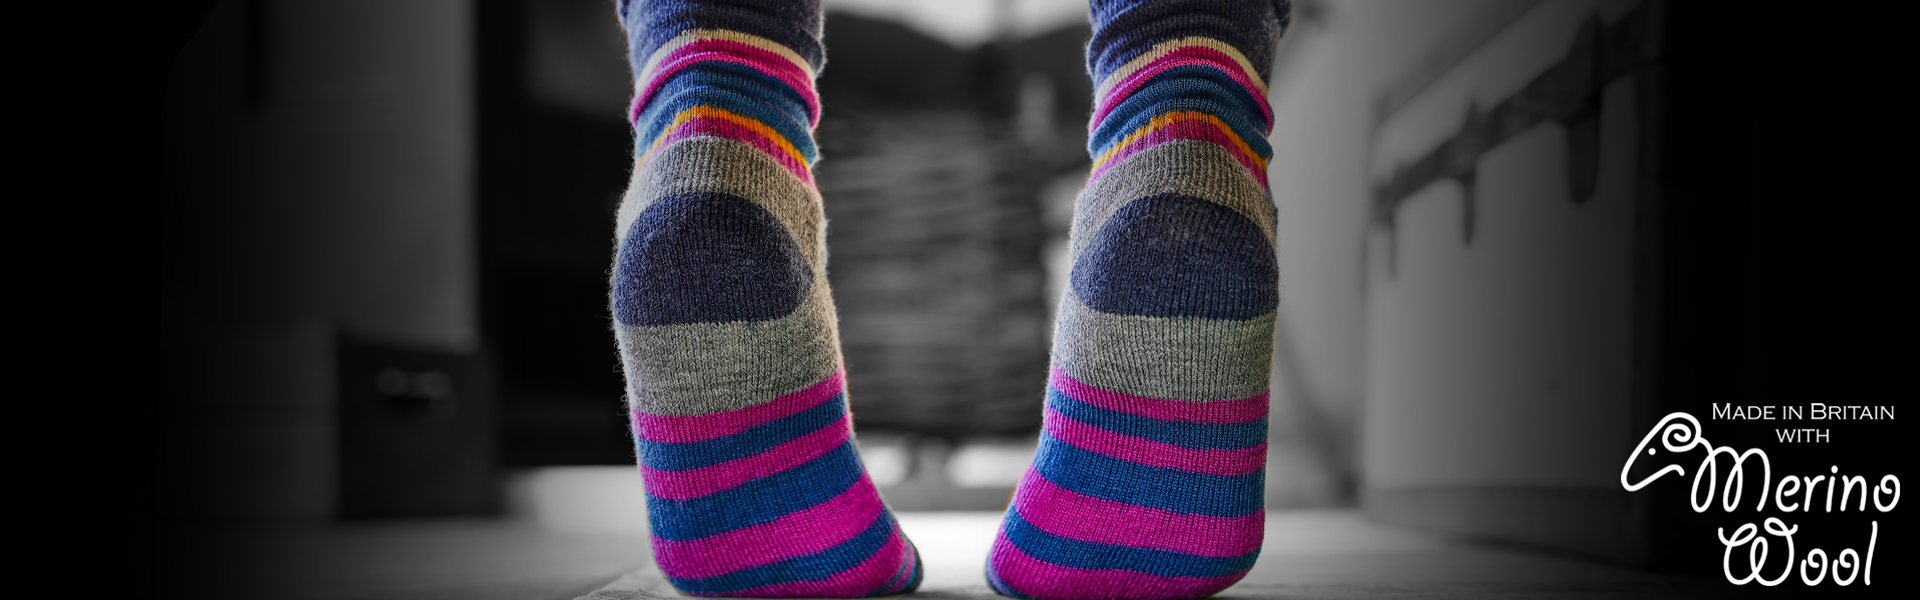 Women's Fully Cushioned Merino Walking Boot Sock - Pittch Merino